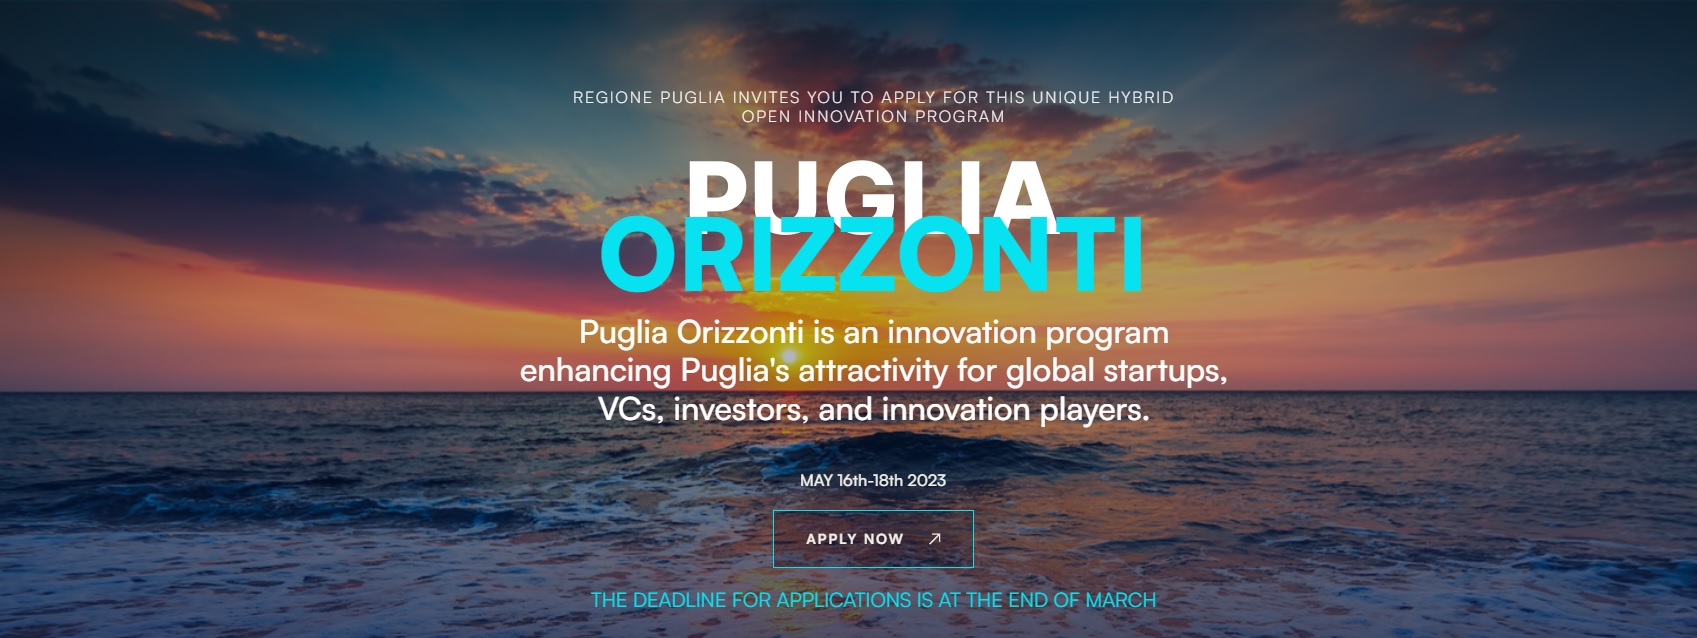 Puglia Orizzonti: Il bando dedicato alle startup innovative